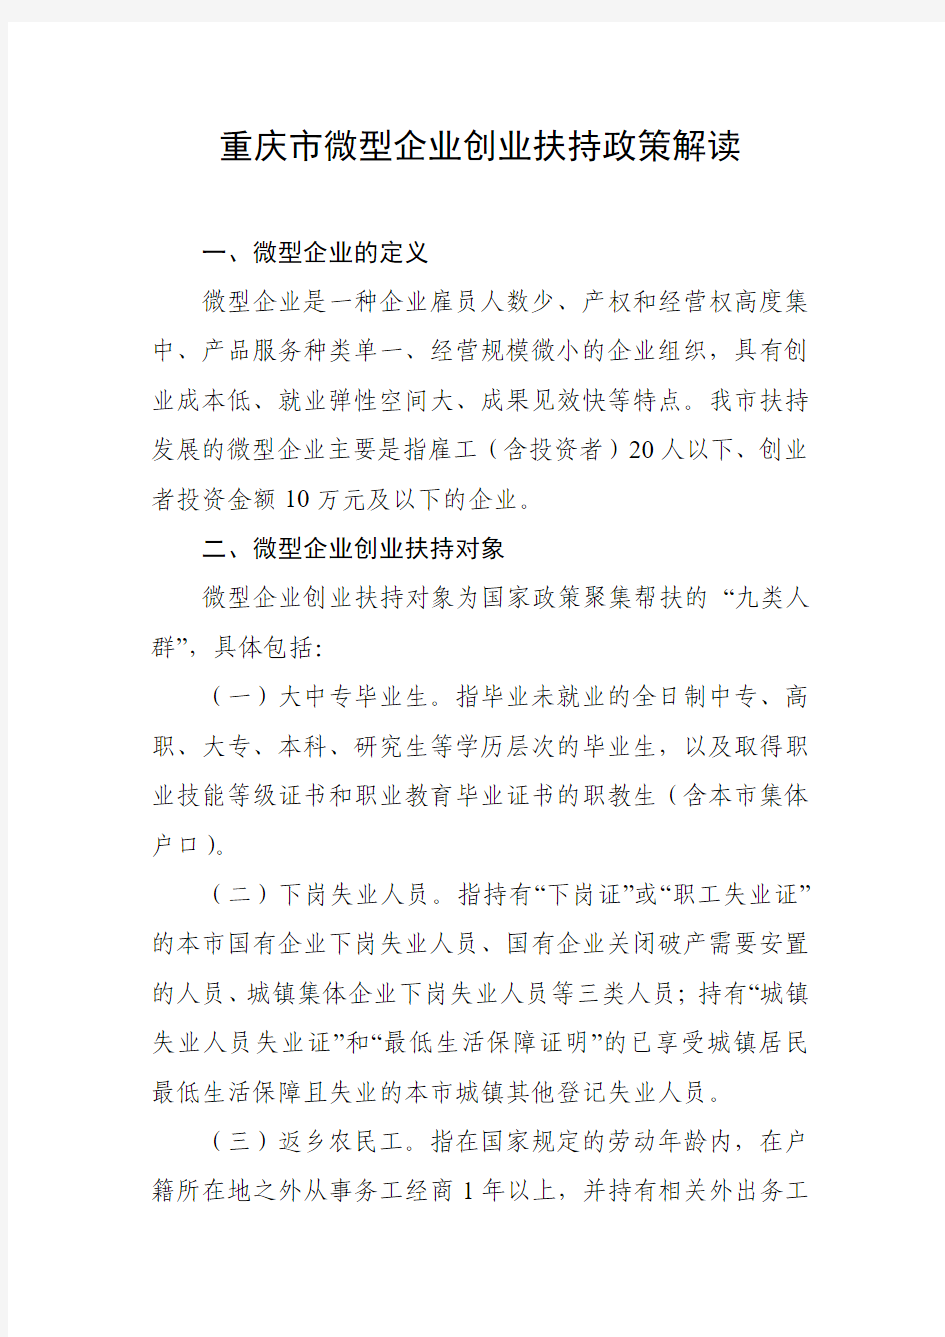 重庆市微型企业创业扶持政策解读